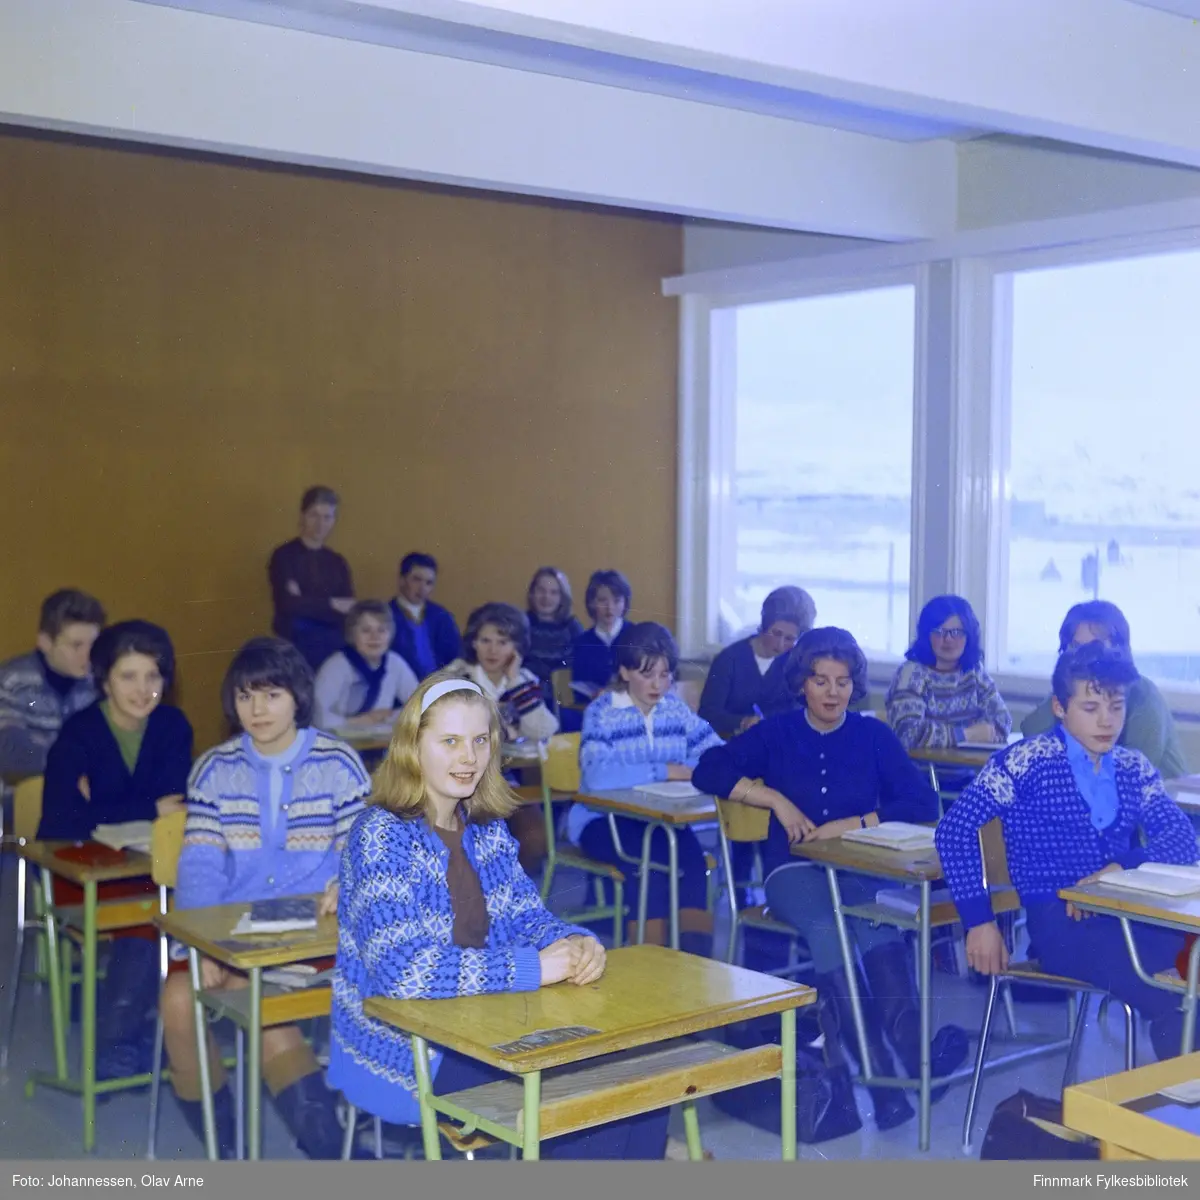 Foto av skoleklasse, muligens på Båtsfjord skole (usikkert)

Trolig på 1960/70-tallet